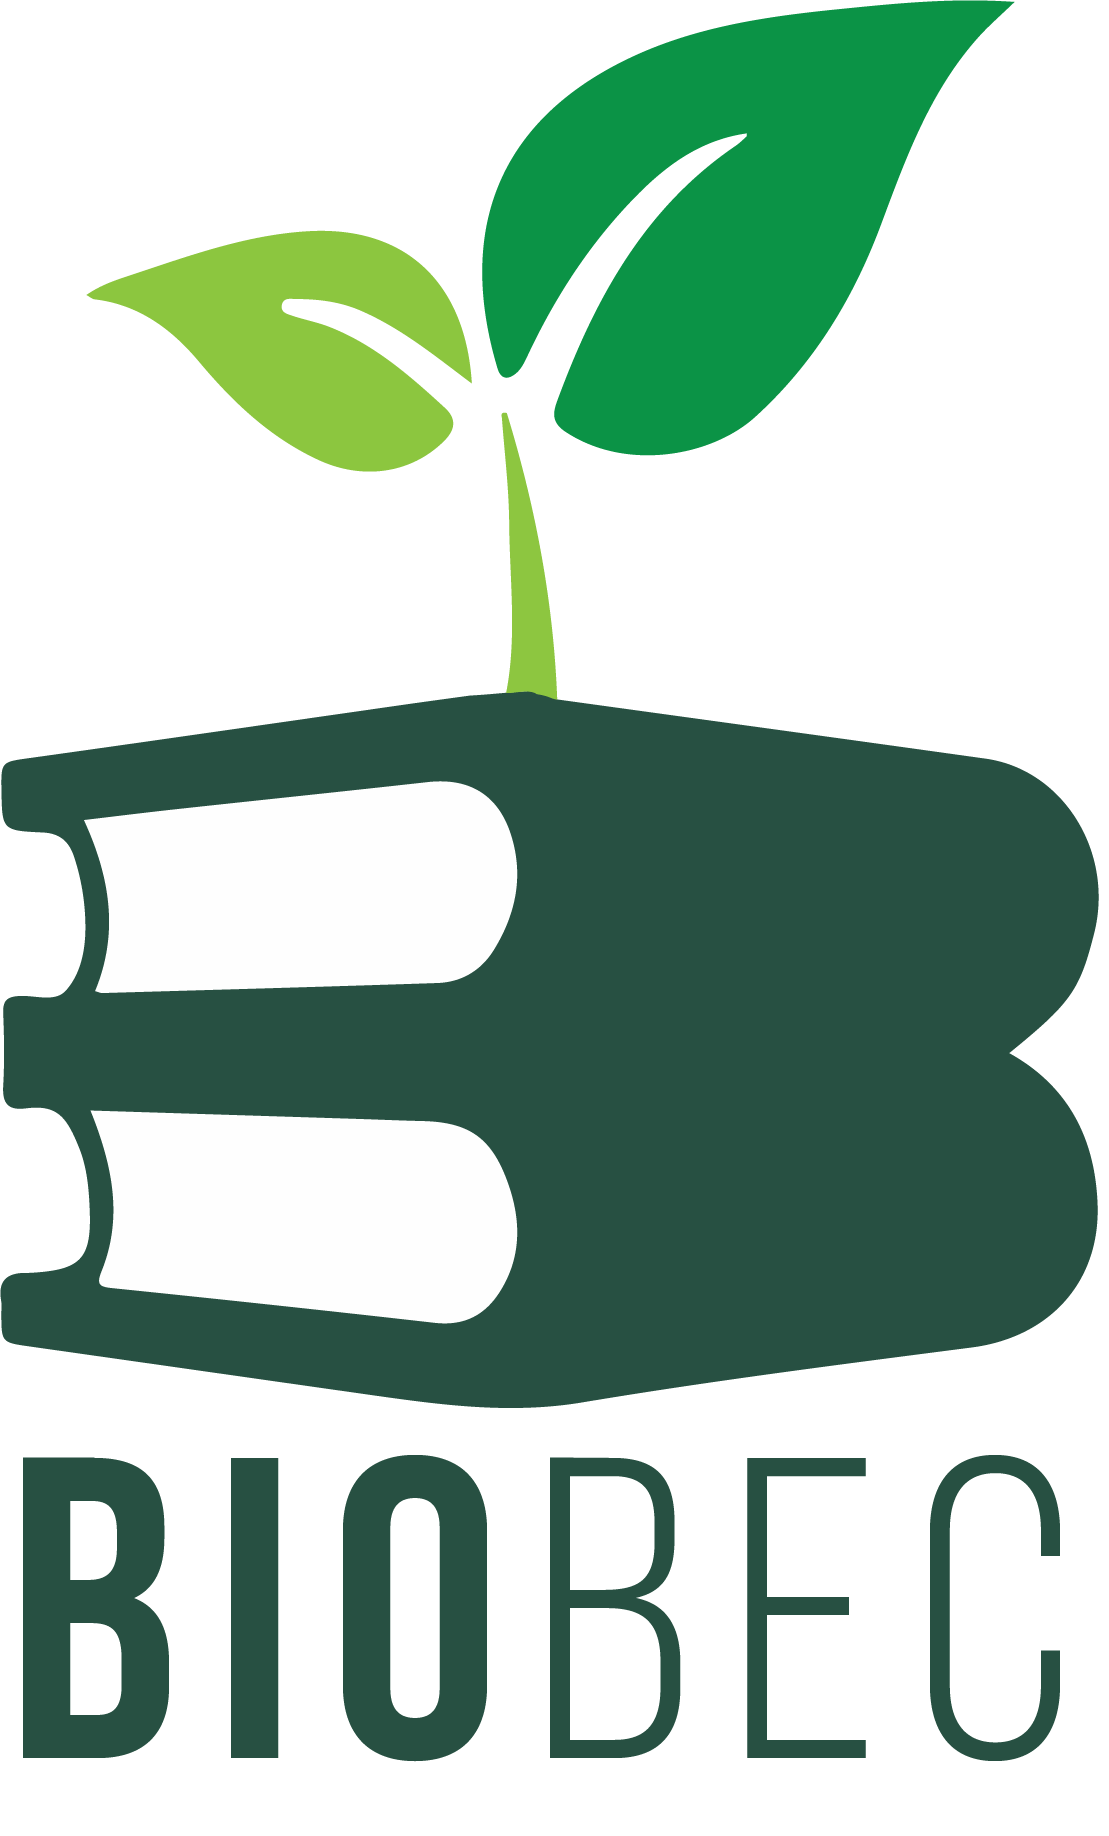 BIObec logo